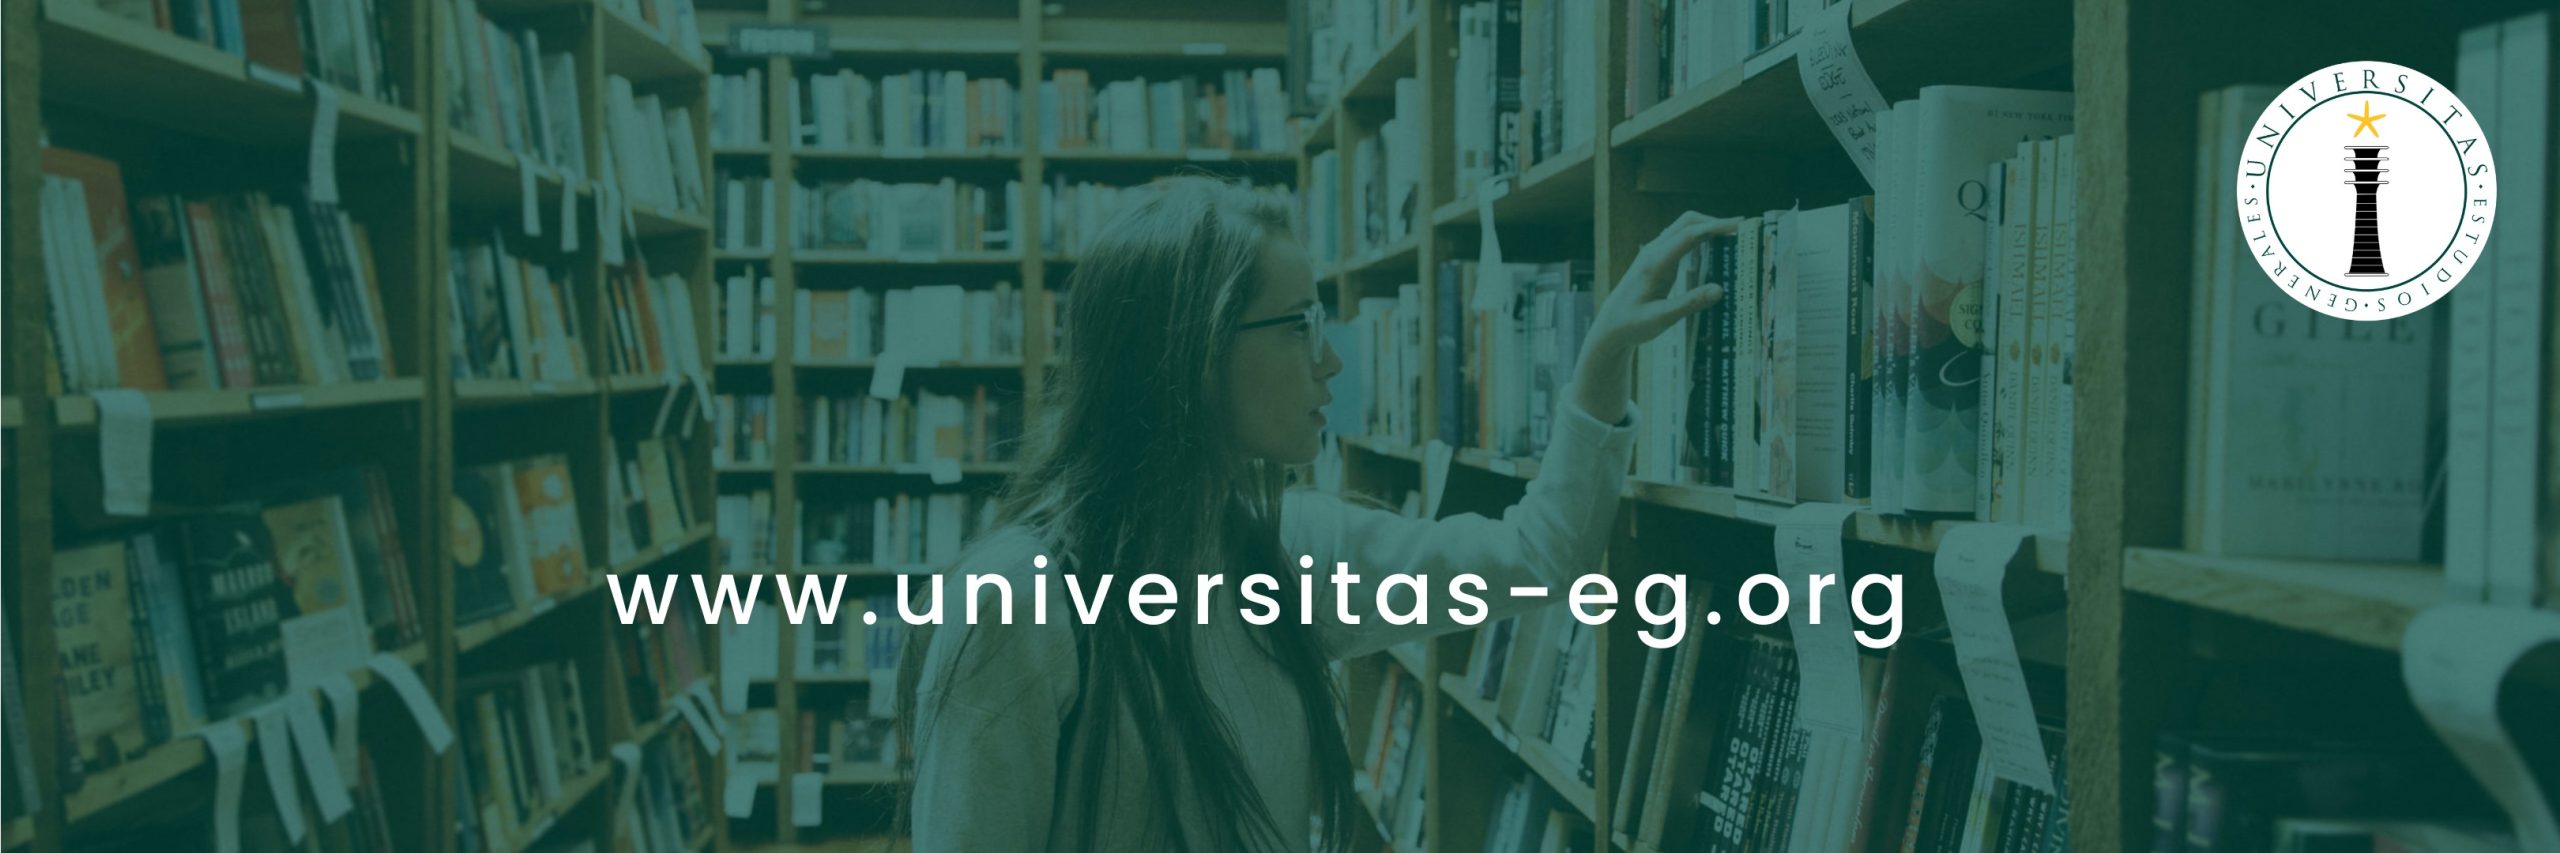 Universitas Estudios Generales se pone en marcha